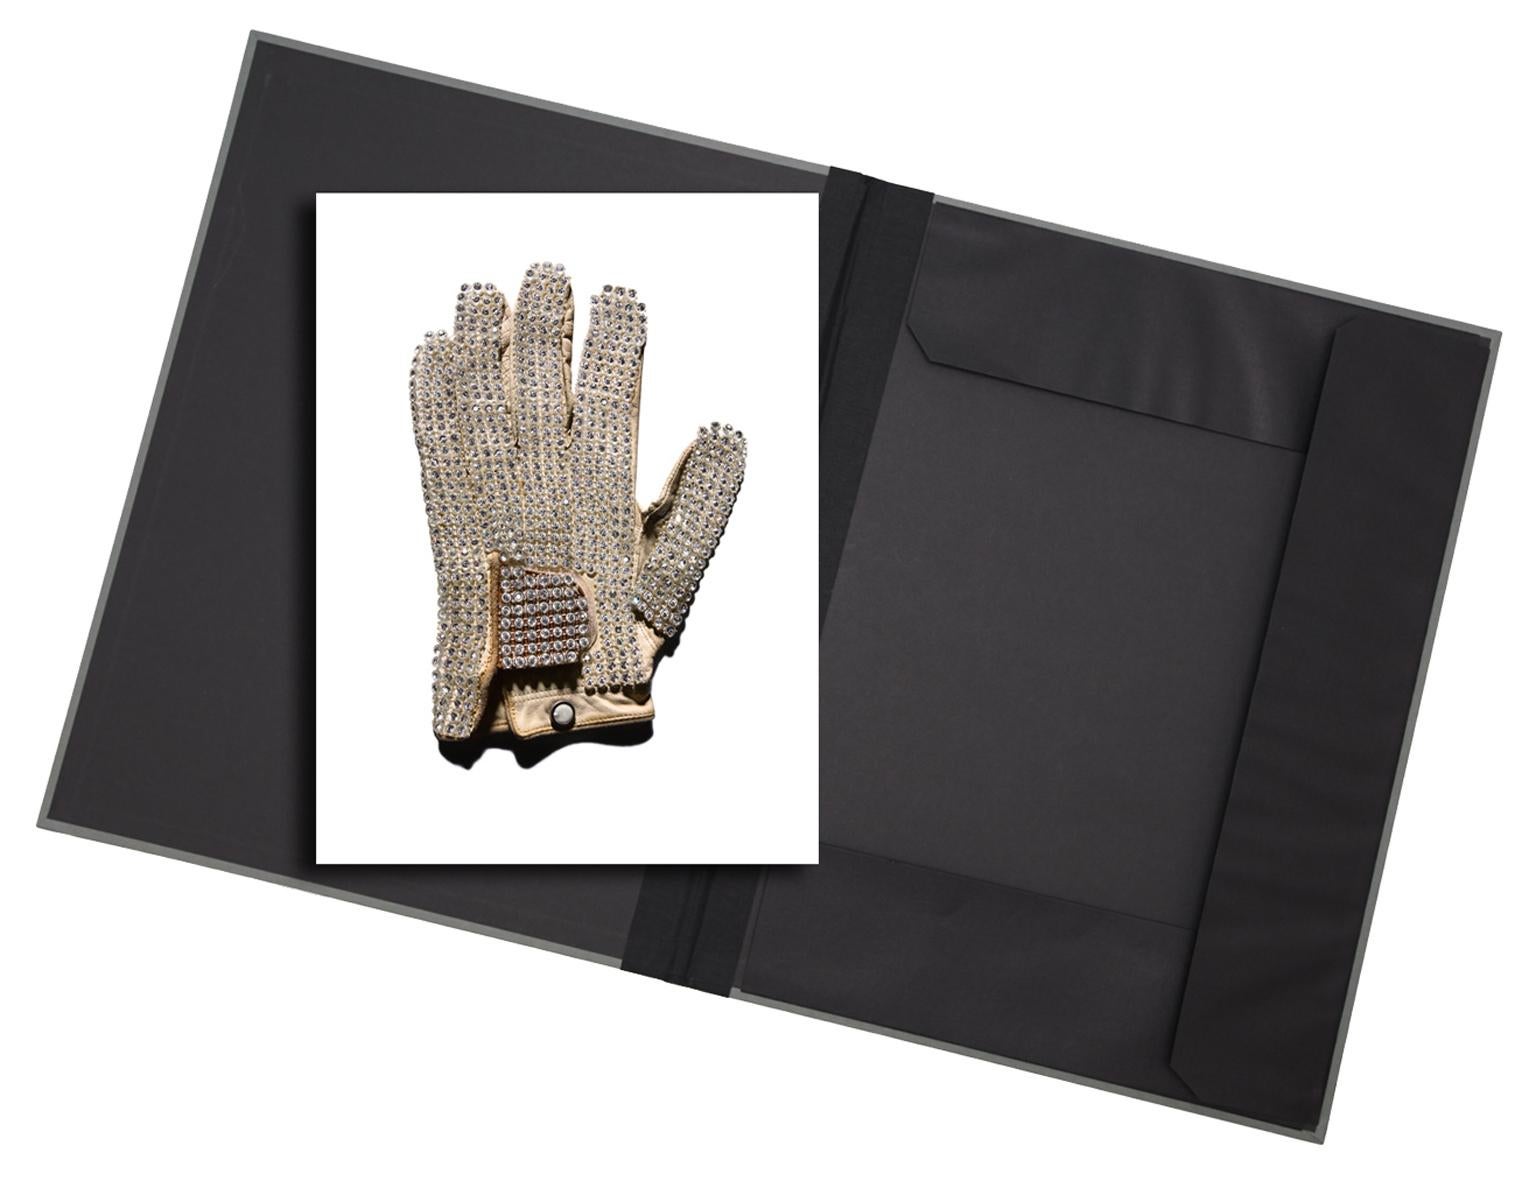 Tom Schierlitz Still-Life Print - White Glove (MJ) - original photograph in archival artwork portfolio gift binder